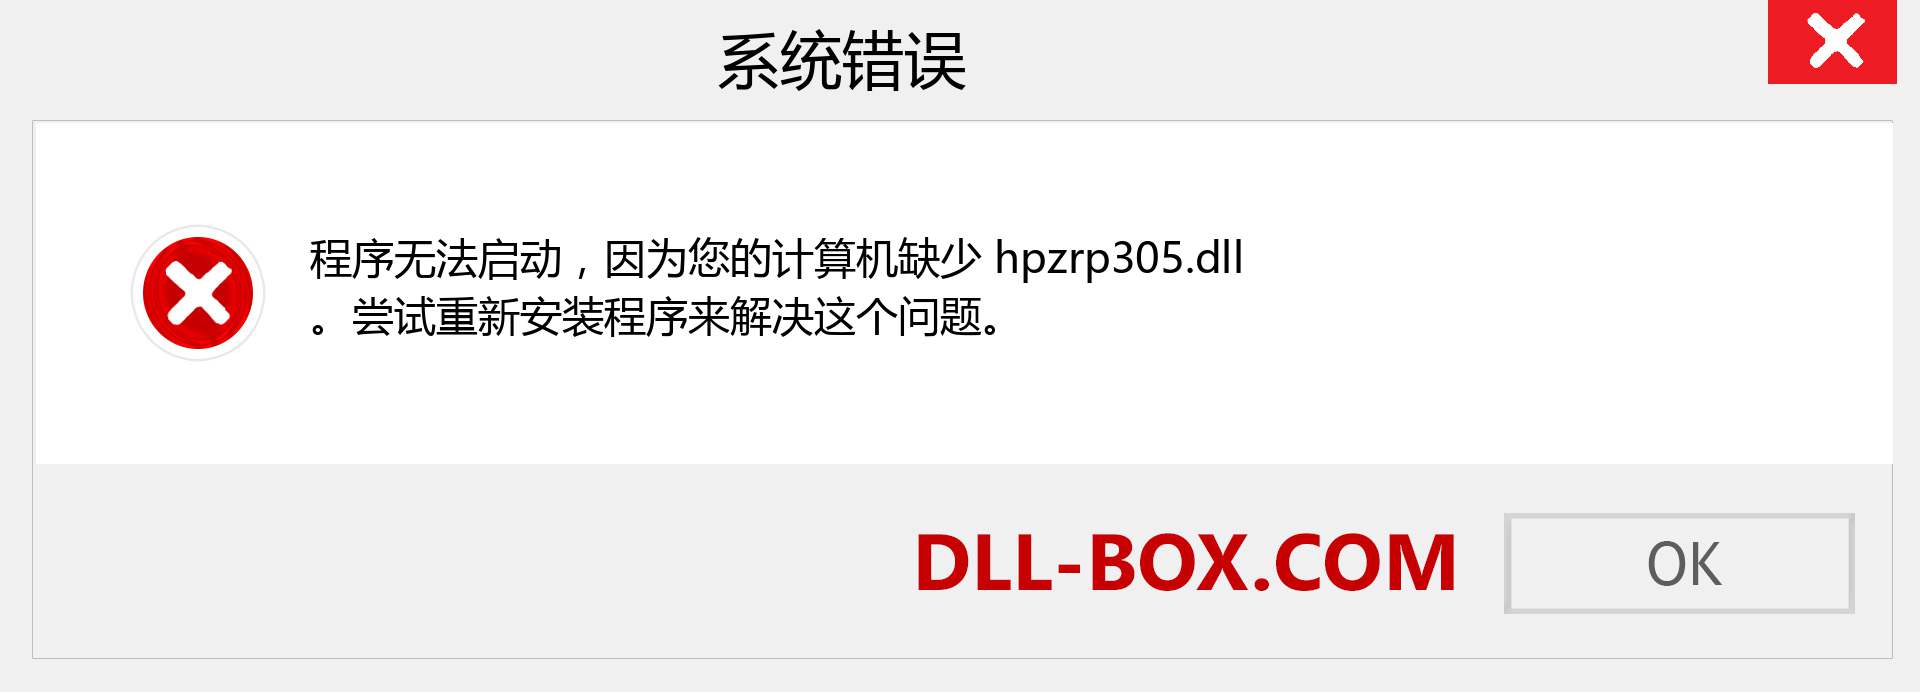 hpzrp305.dll 文件丢失？。 适用于 Windows 7、8、10 的下载 - 修复 Windows、照片、图像上的 hpzrp305 dll 丢失错误